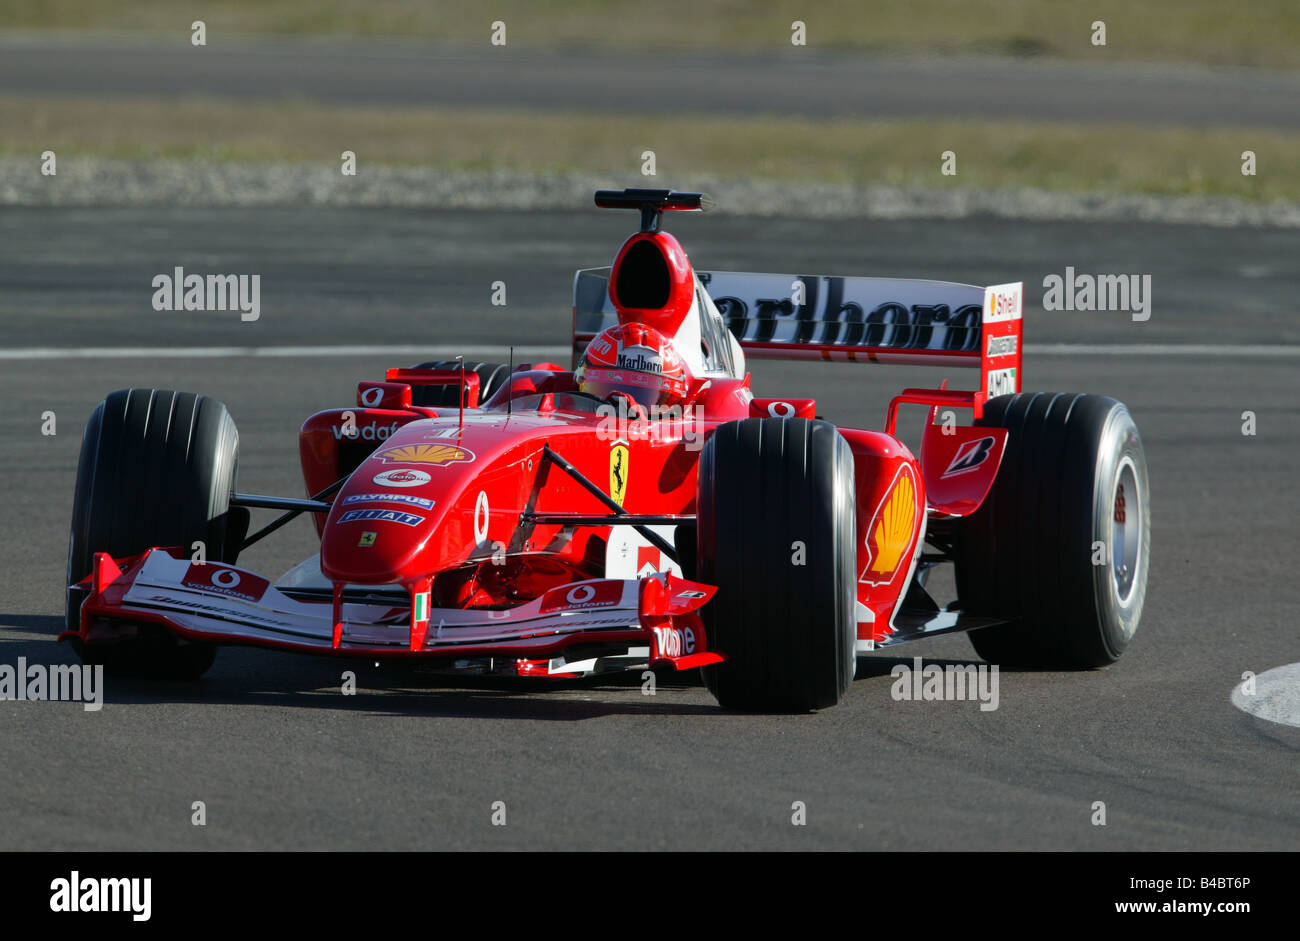 El deporte del motor, Michael Schumacher en Ferrari, FORMEL 1, Personas, Race Driver, racetrack, circuito, Race Course, conducción, diagonal Foto de stock